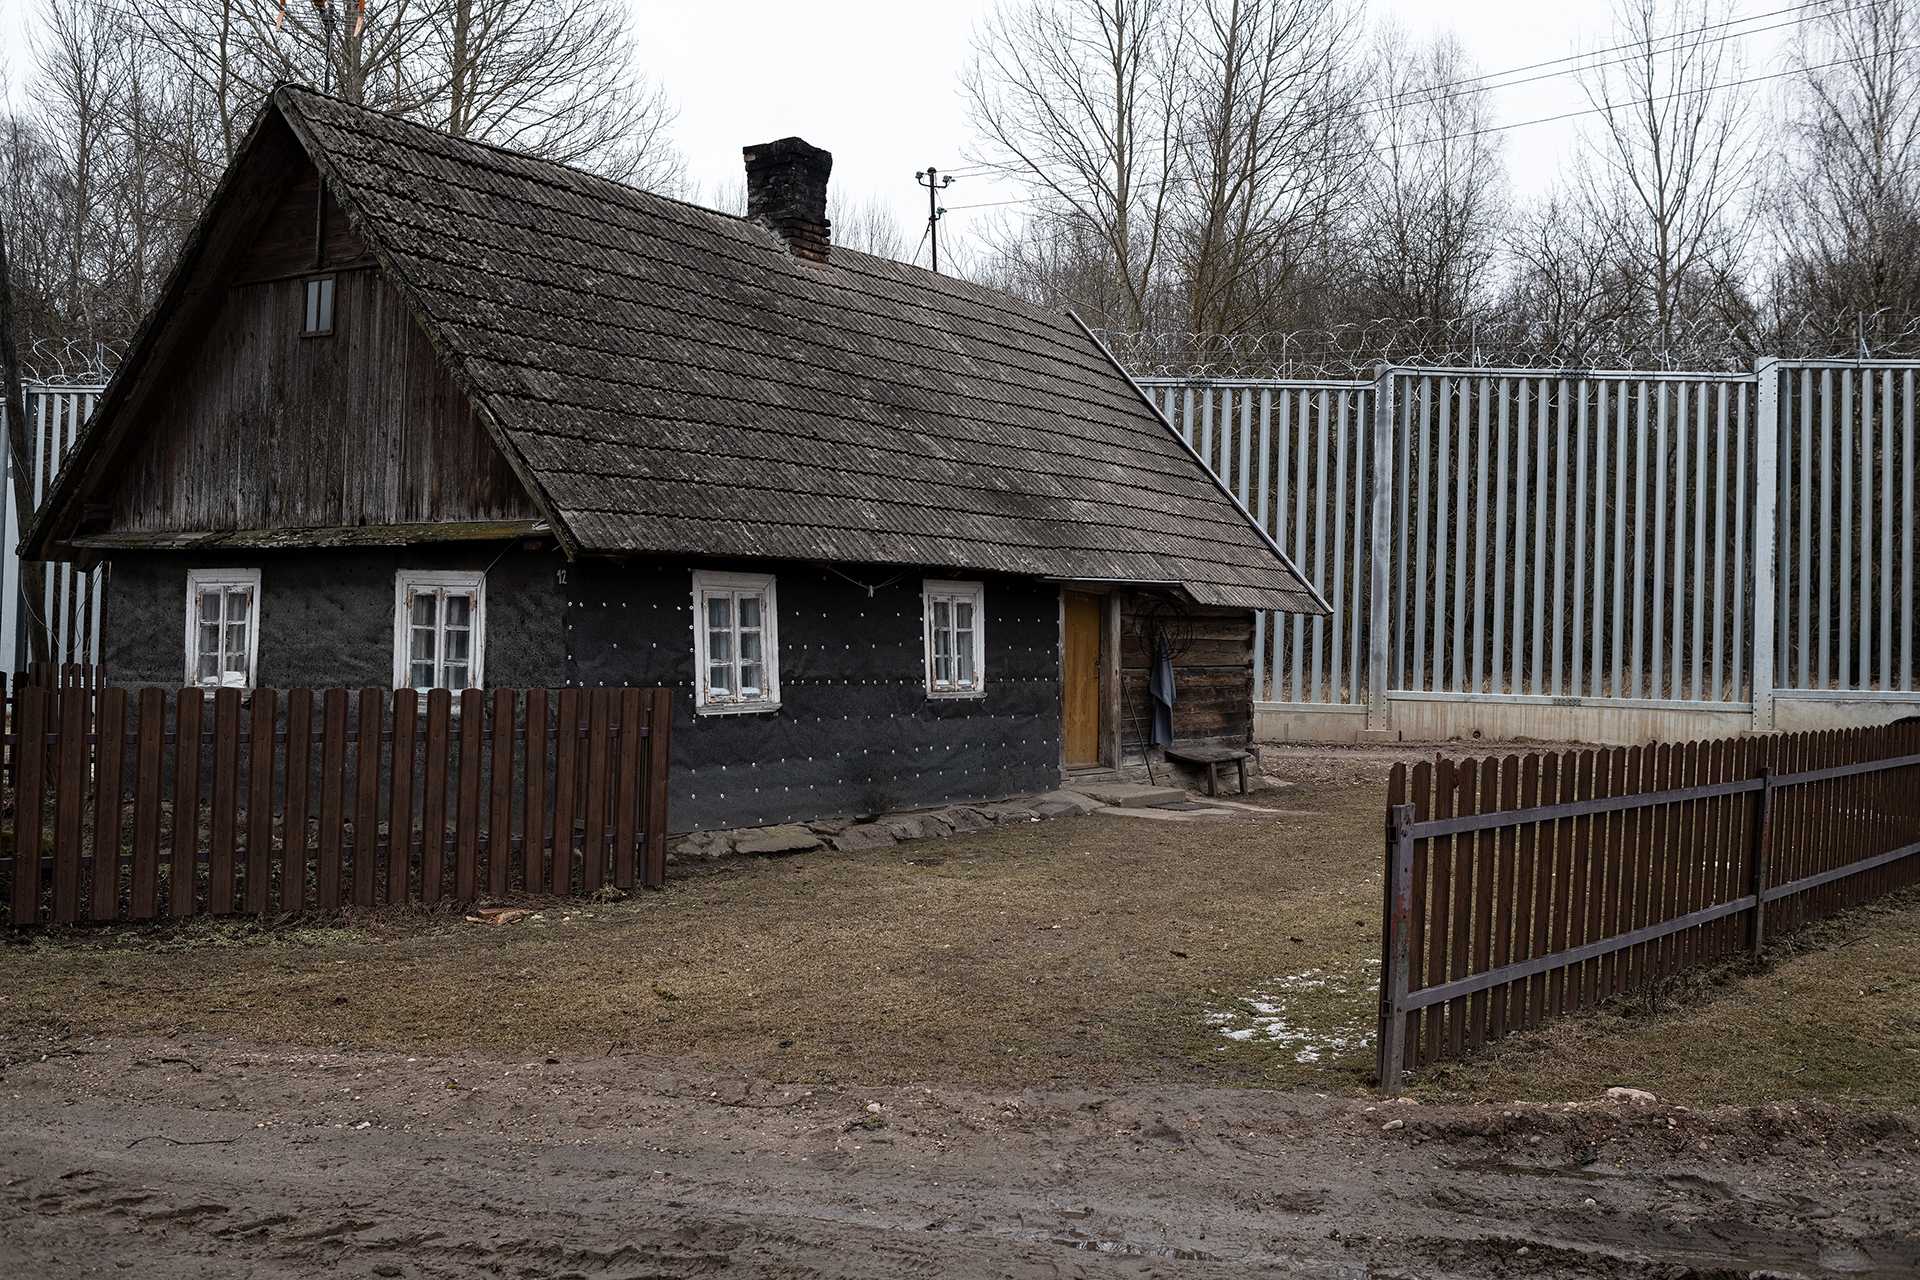  Zdjęcie (H.J.): Jeden dom w To  ł  czy, wsi...